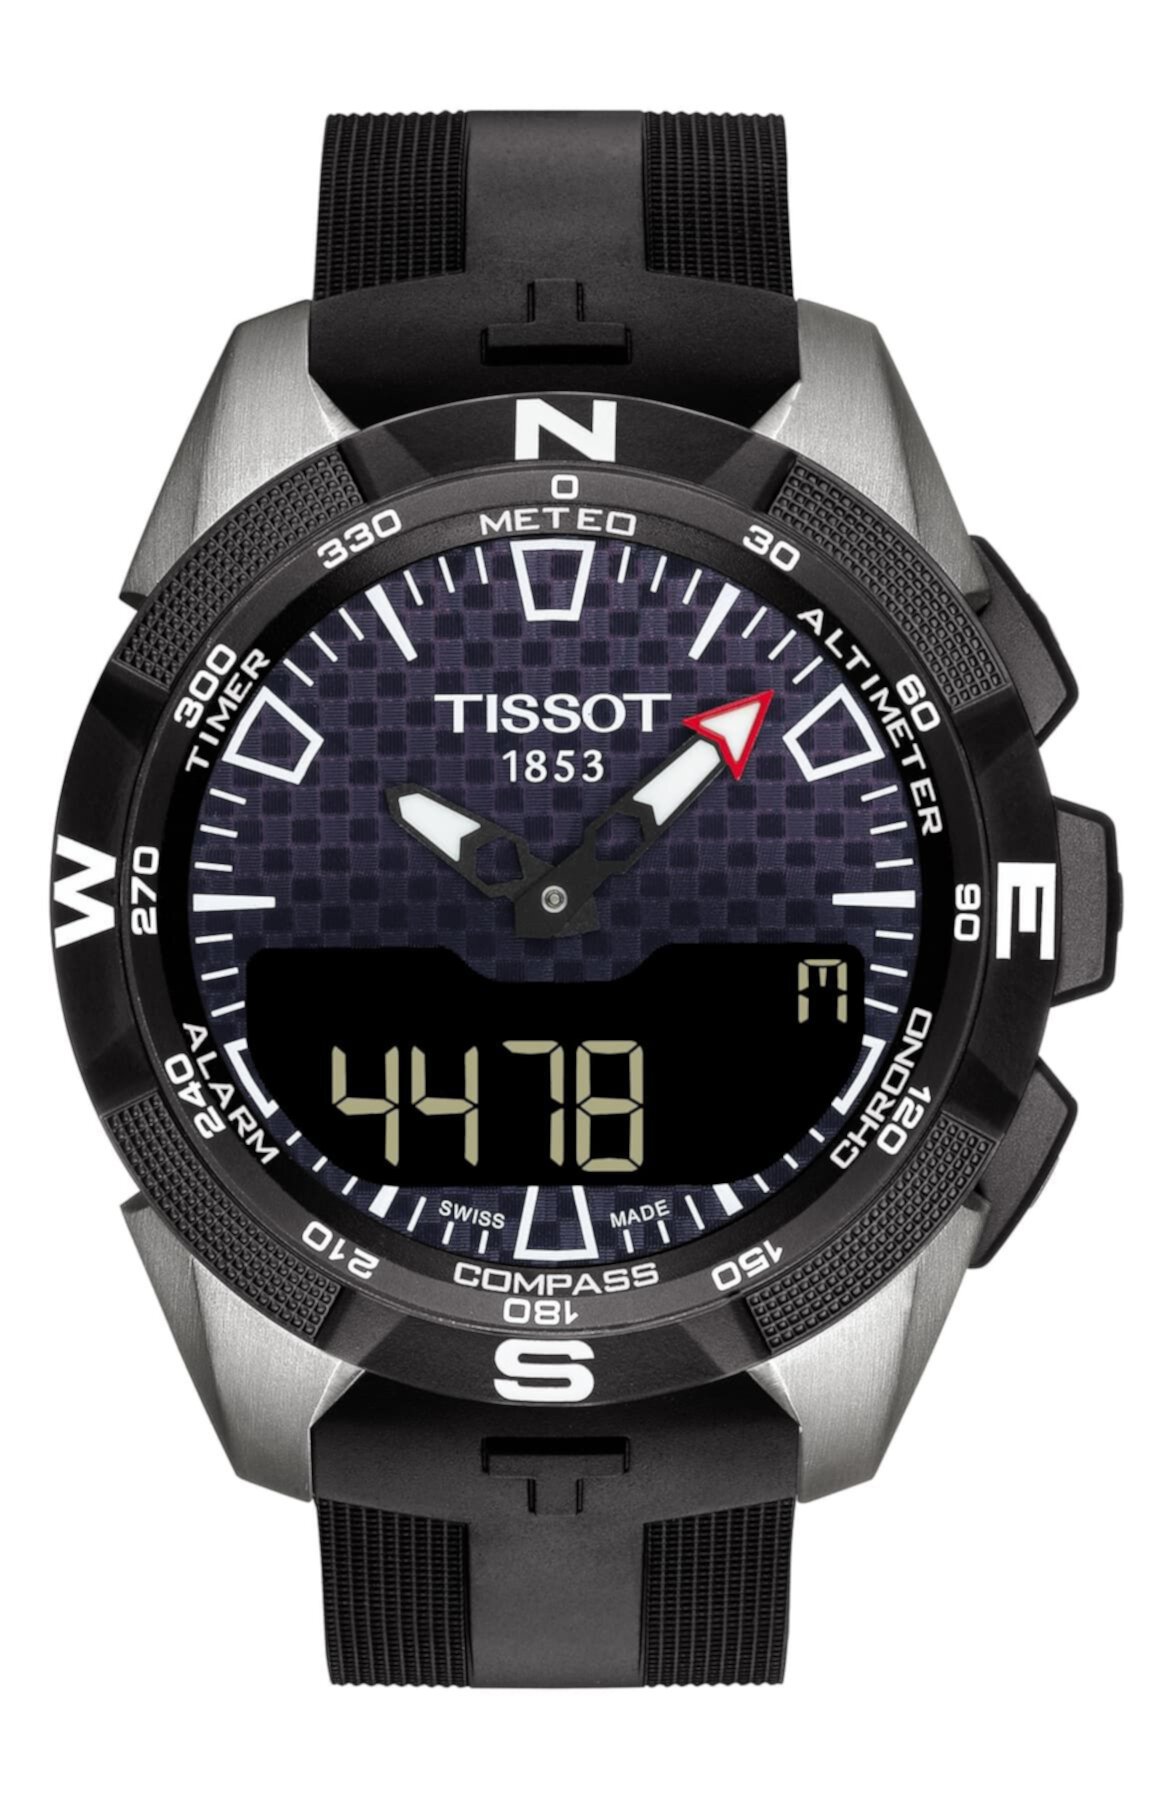 Мужские часы T-Tech Solar II, 45 мм Tissot